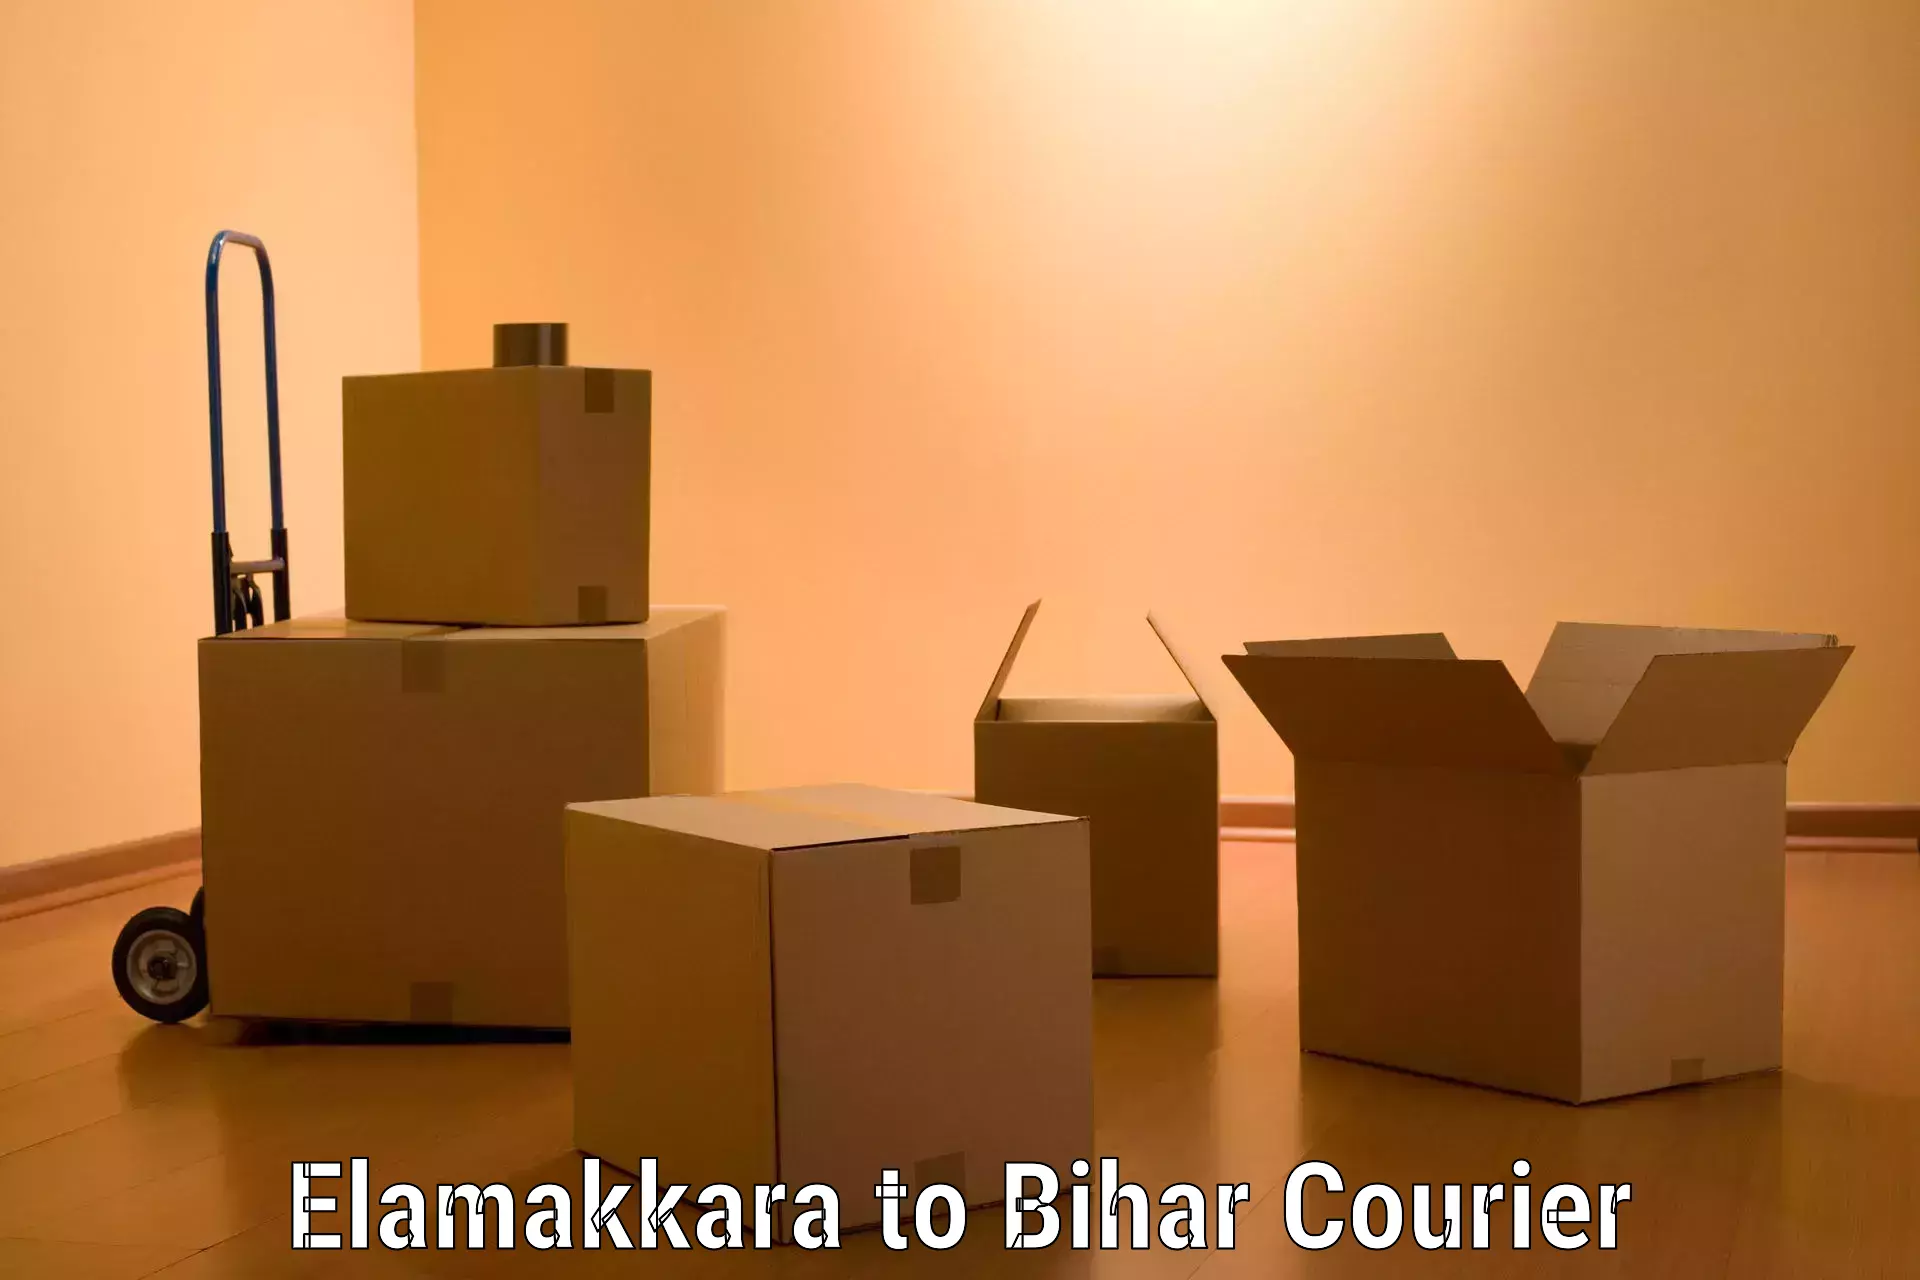 Furniture moving experts Elamakkara to Arrah